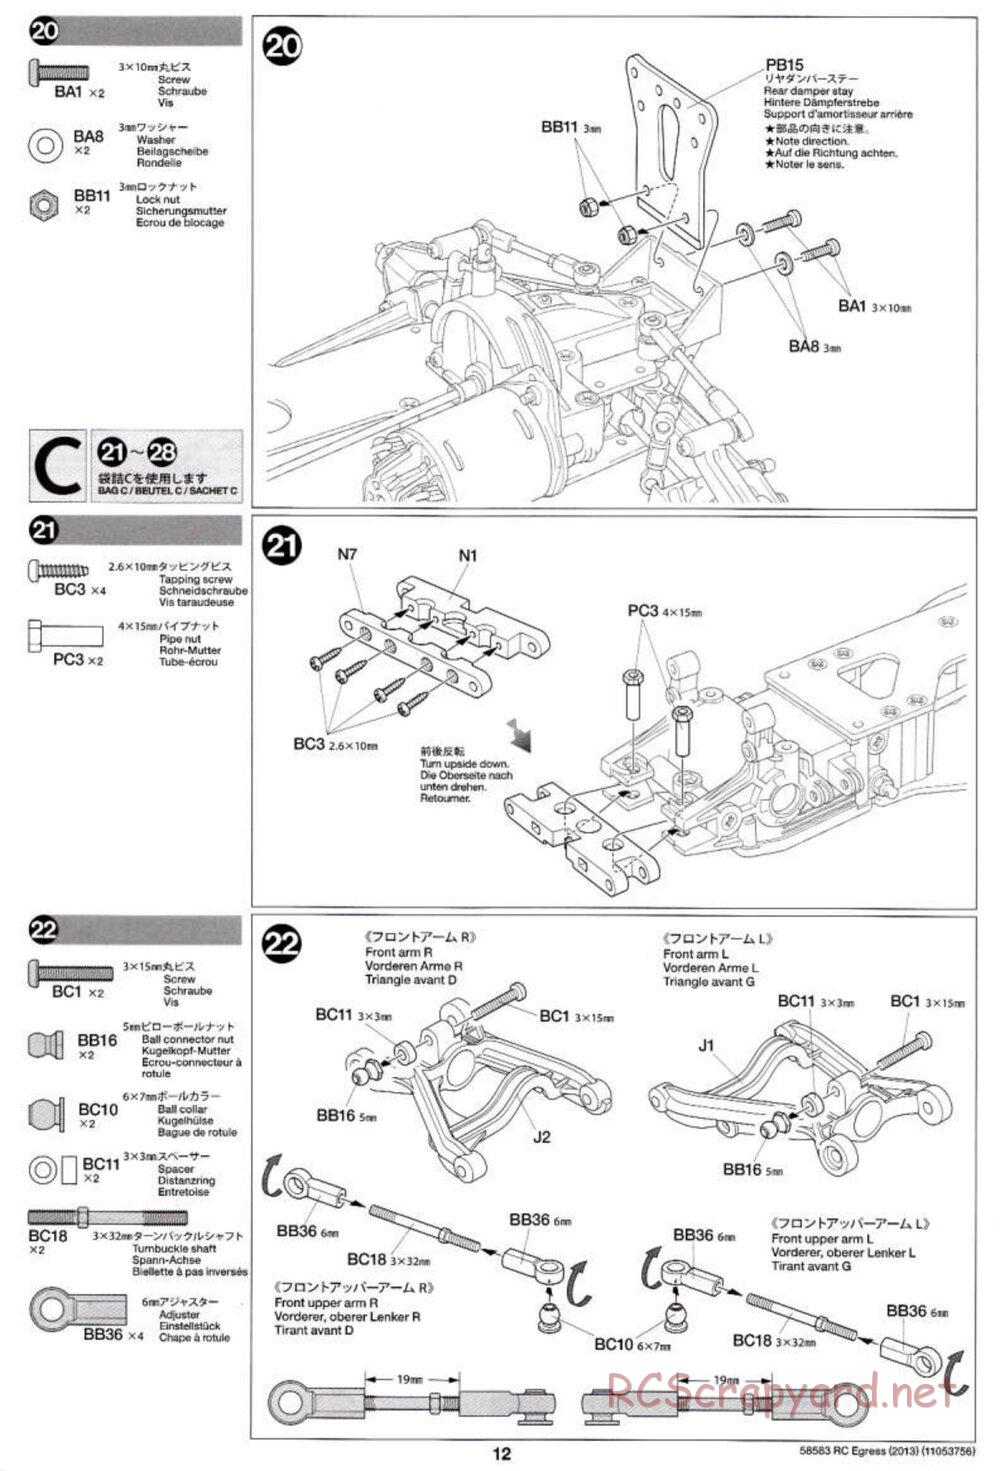 Tamiya - Egress 2013 - AV Chassis - Manual - Page 12